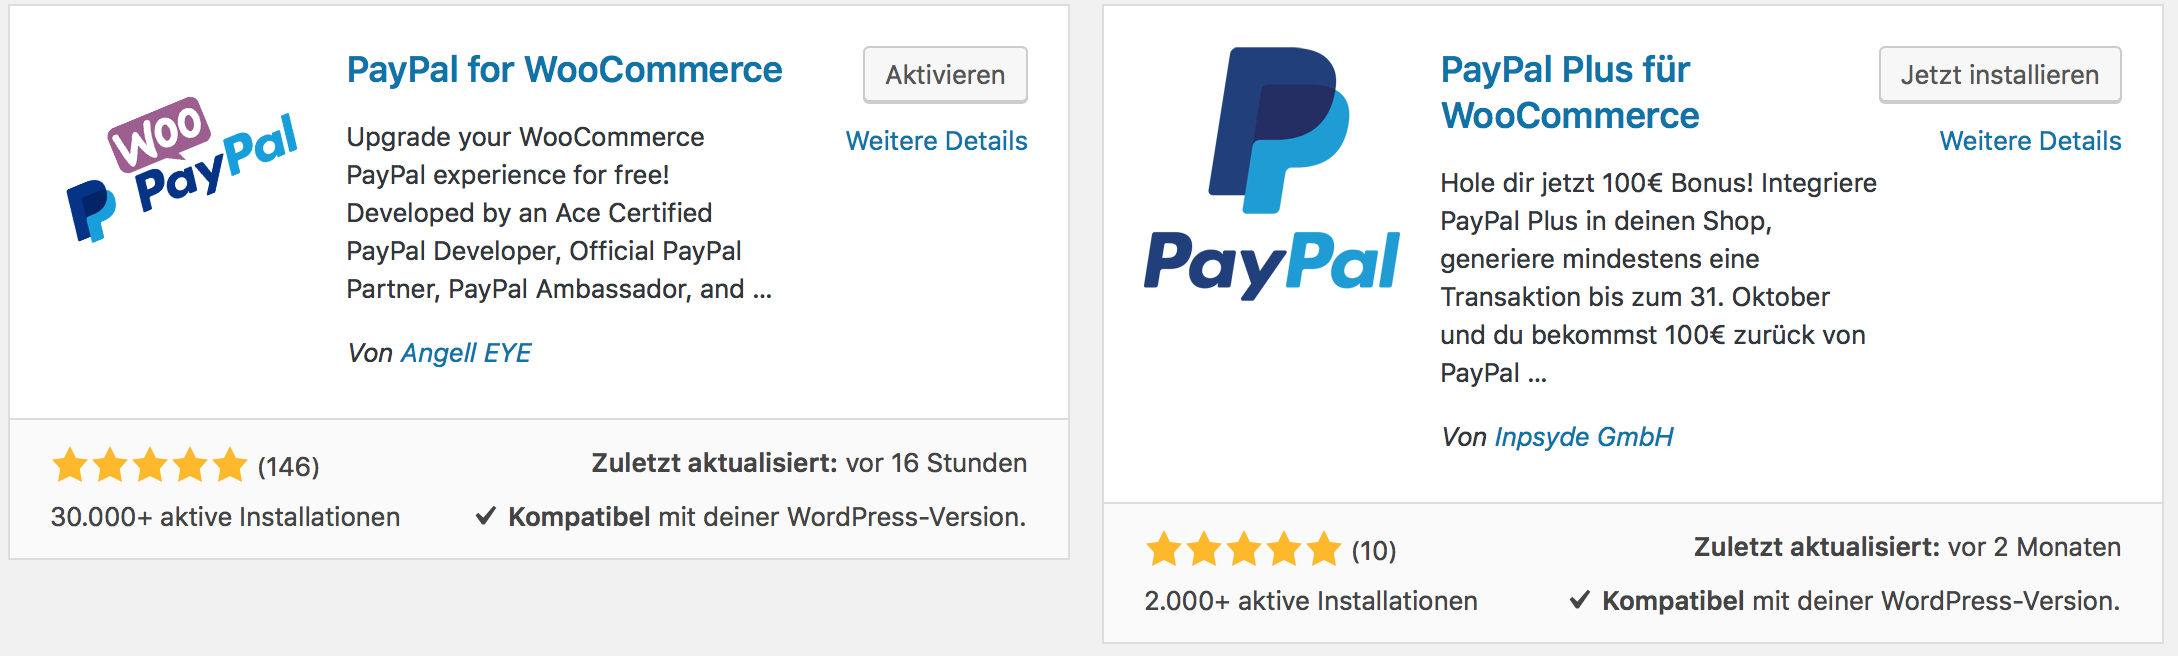 PayPal for WooCommerce und PayPal Plus für WooCommerce als Plugins